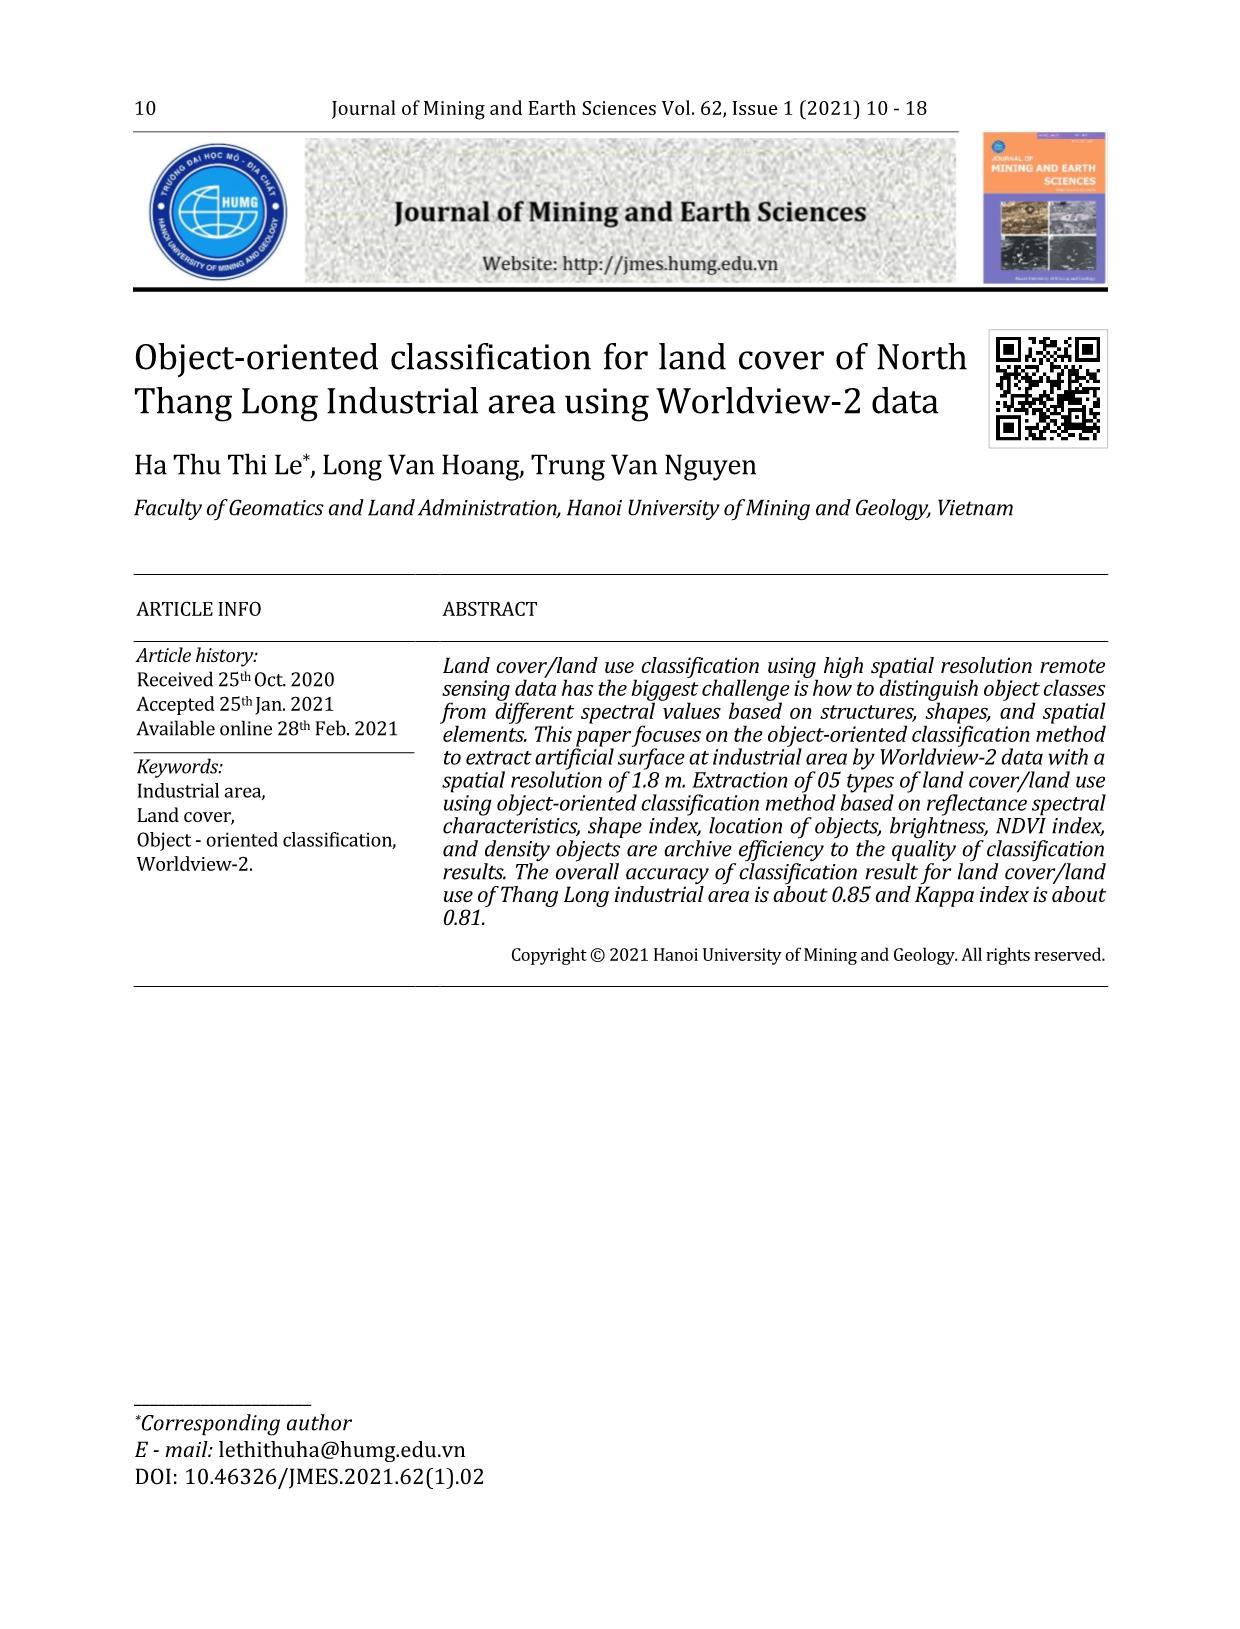 Phân loại lớp phủ bề mặt khu công nghiệp Bắc Thăng Long bằng phương pháp phân loại hướng đối tượng sử dụng dữ liệu ảnh vệ tinh độ phân giải cao Worldview-2 trang 1